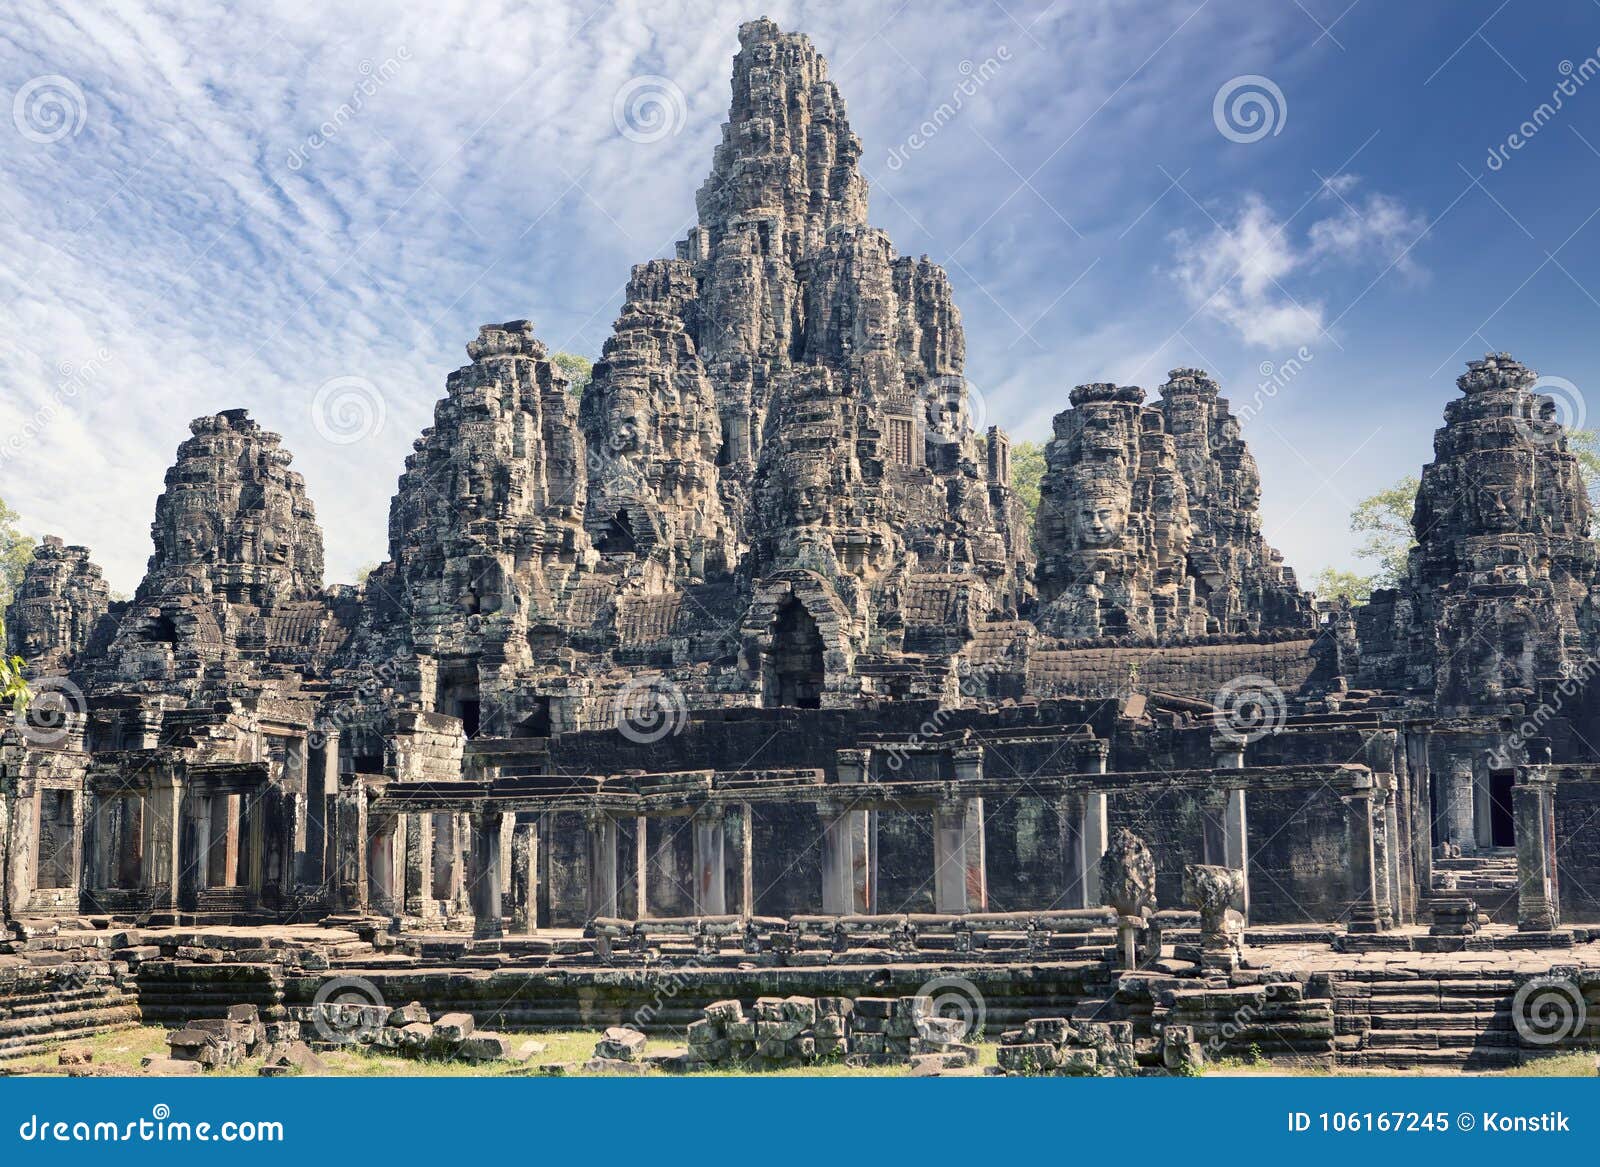 Ancient Bayon Temple 12th Century At Angkor Wat Siem Reap Cambodia Stock Image Image Of Hindu Asian